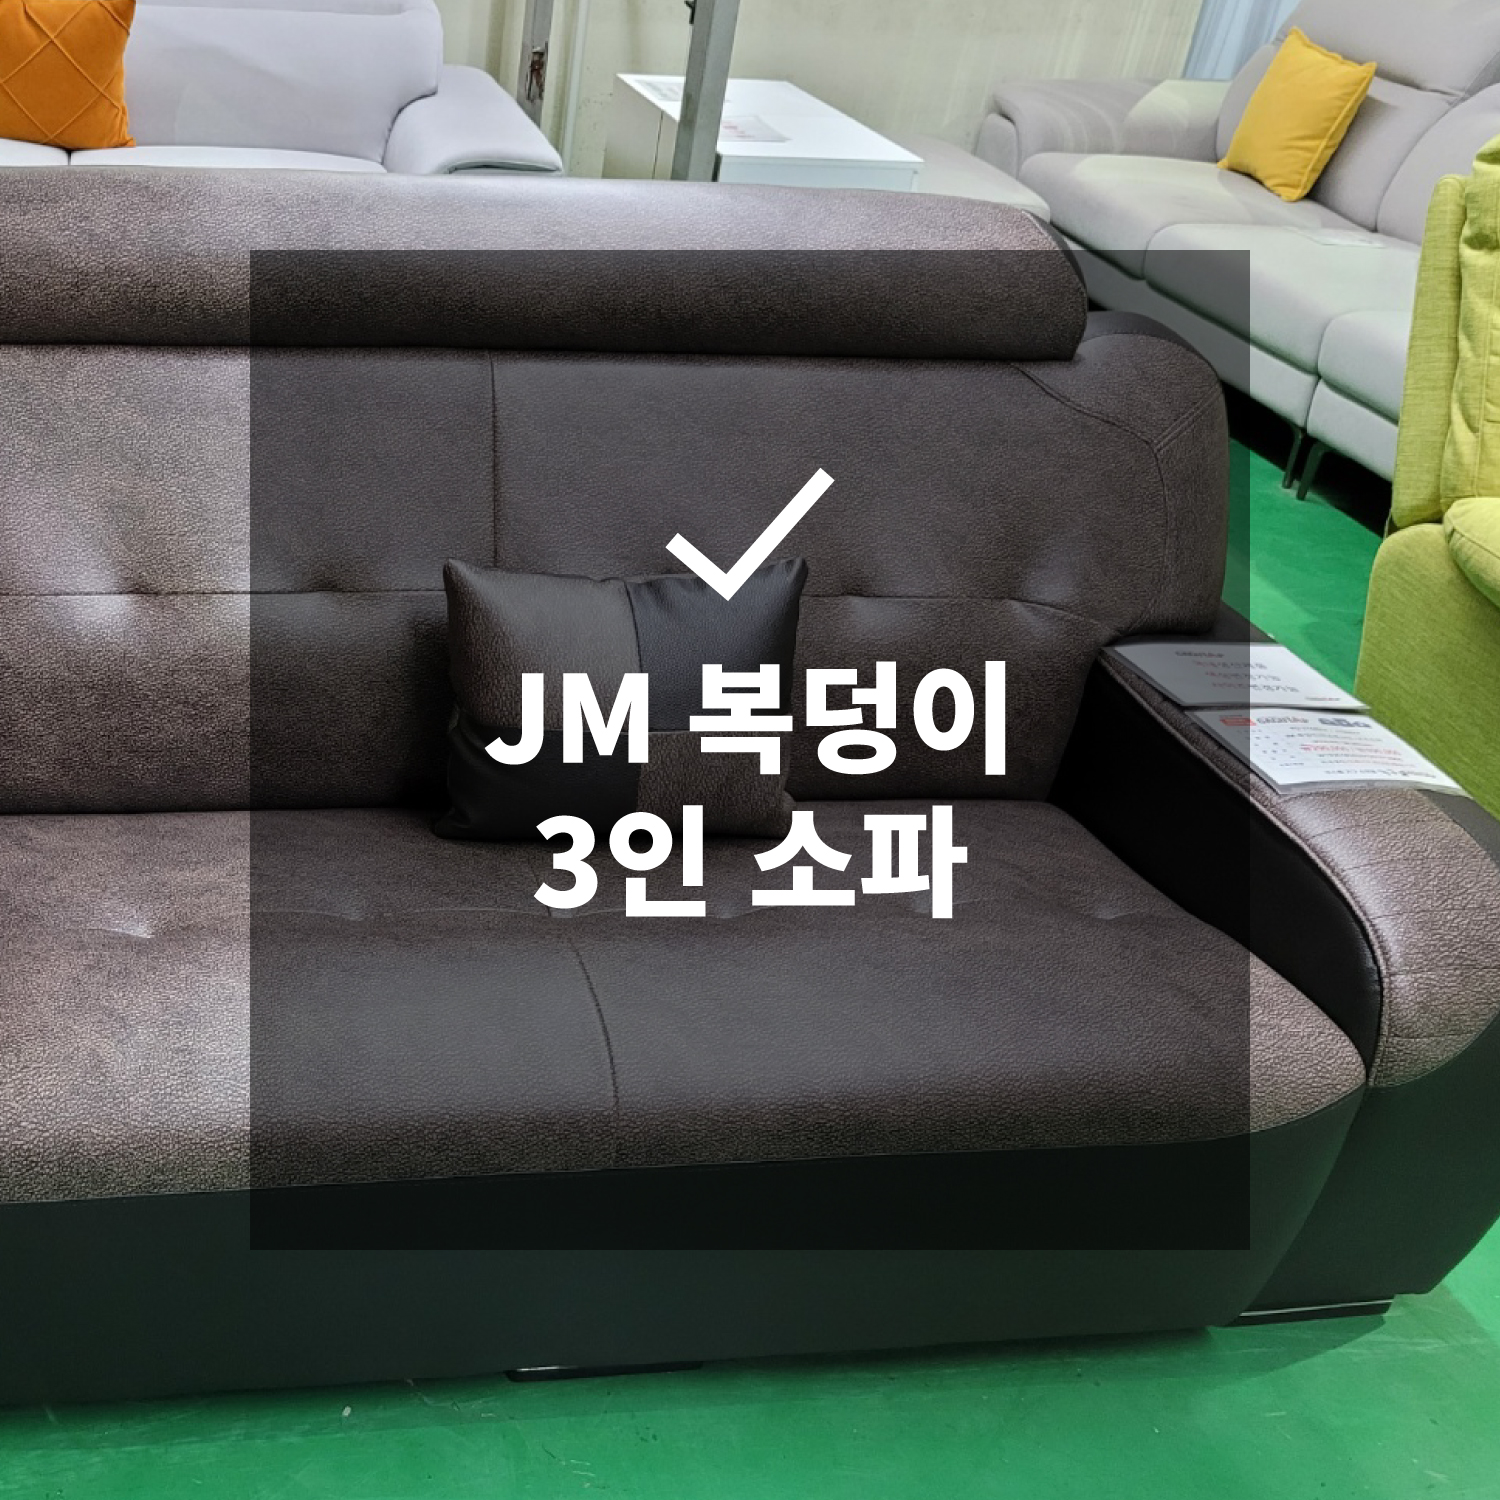 JM 복덩이 3인 소파 + 보조 소파 (국내생산)